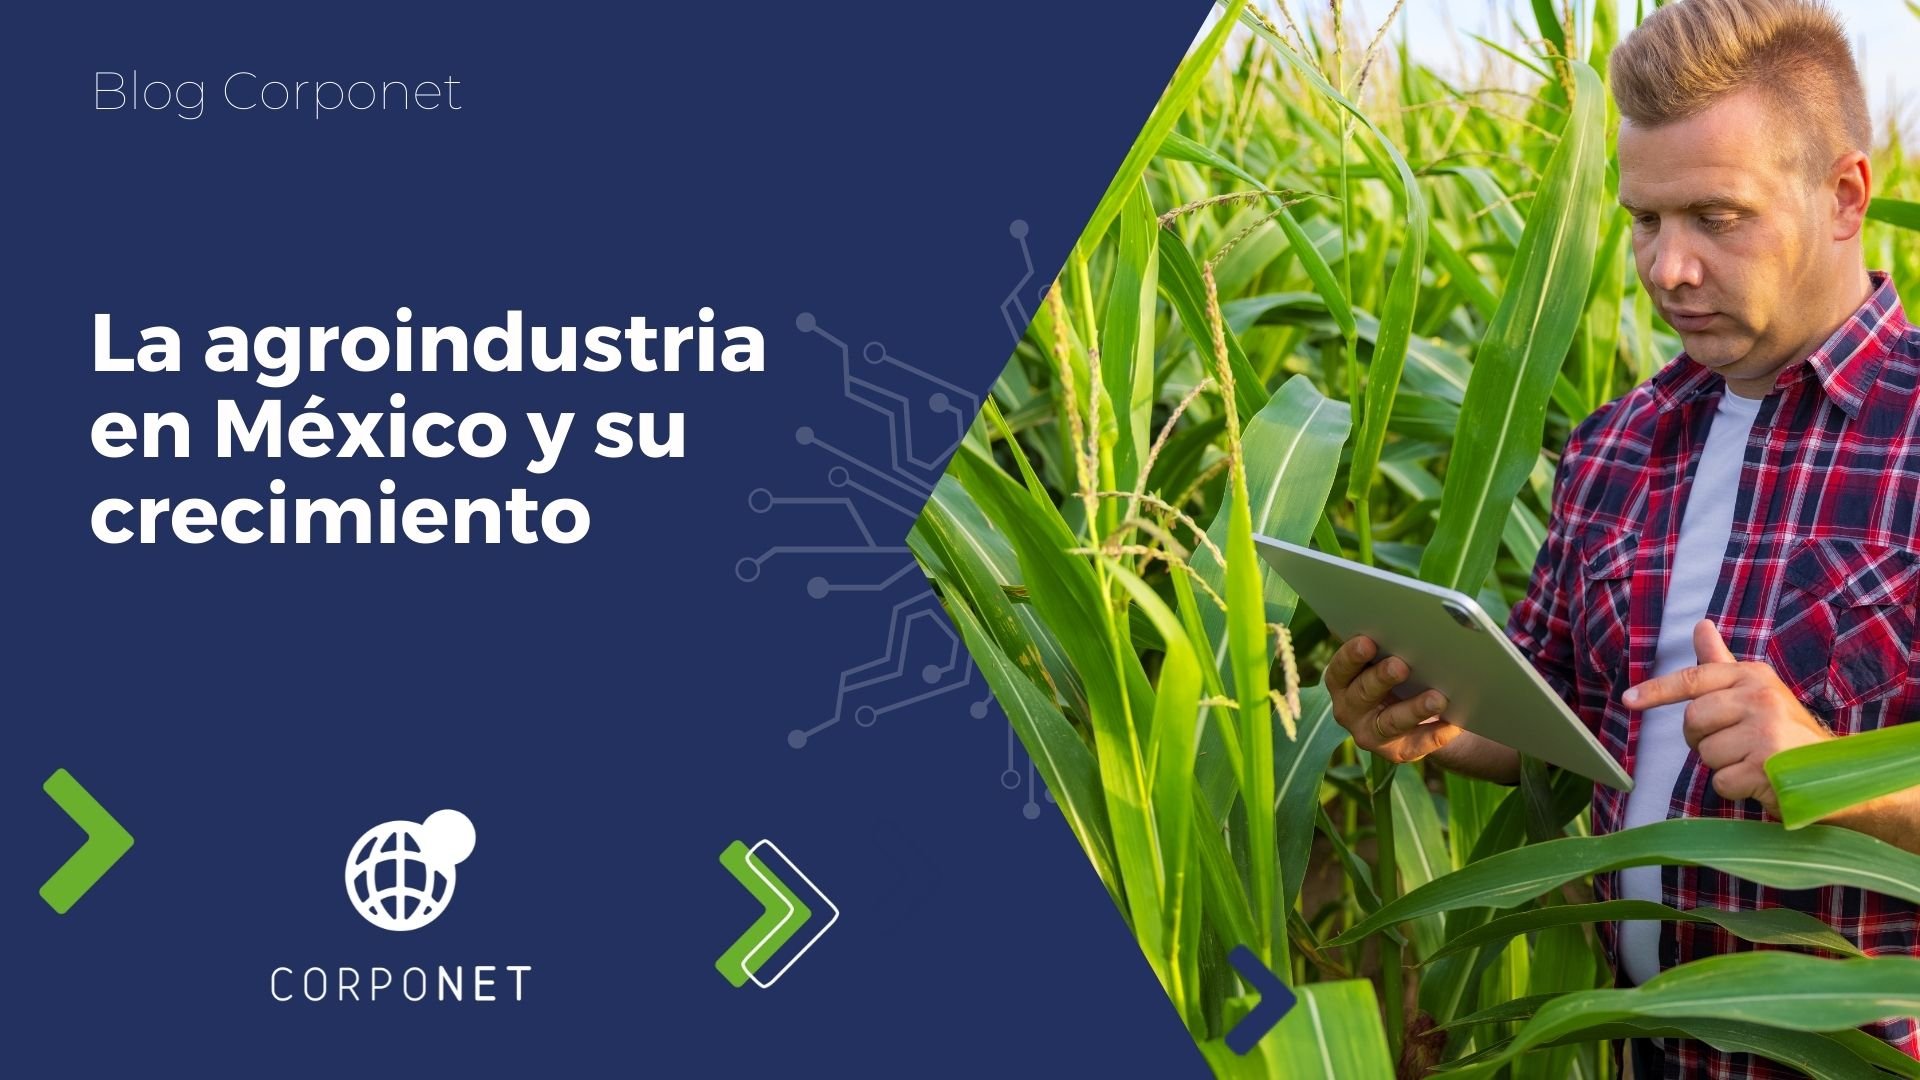 La agroindustria en México y su crecimientoblog